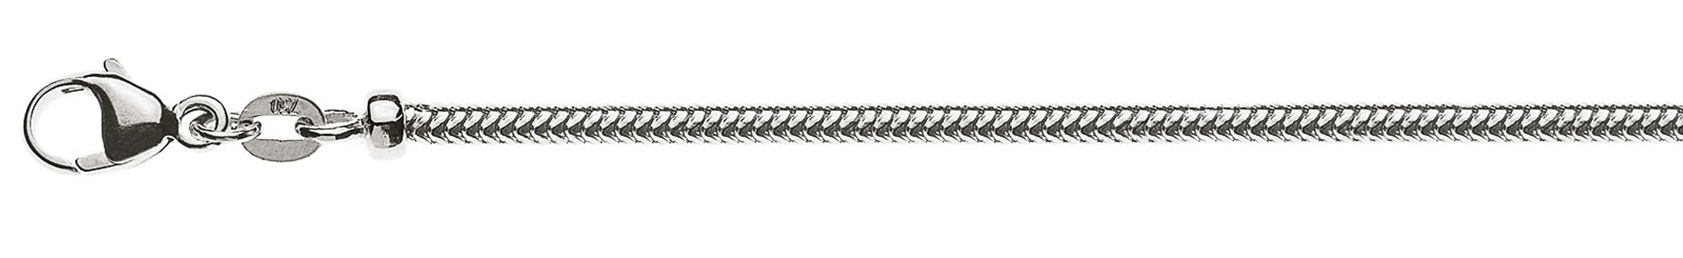 AURONOS Prestige Halskette Weissgold 18K Schlangenkette 40cm 2.4mm